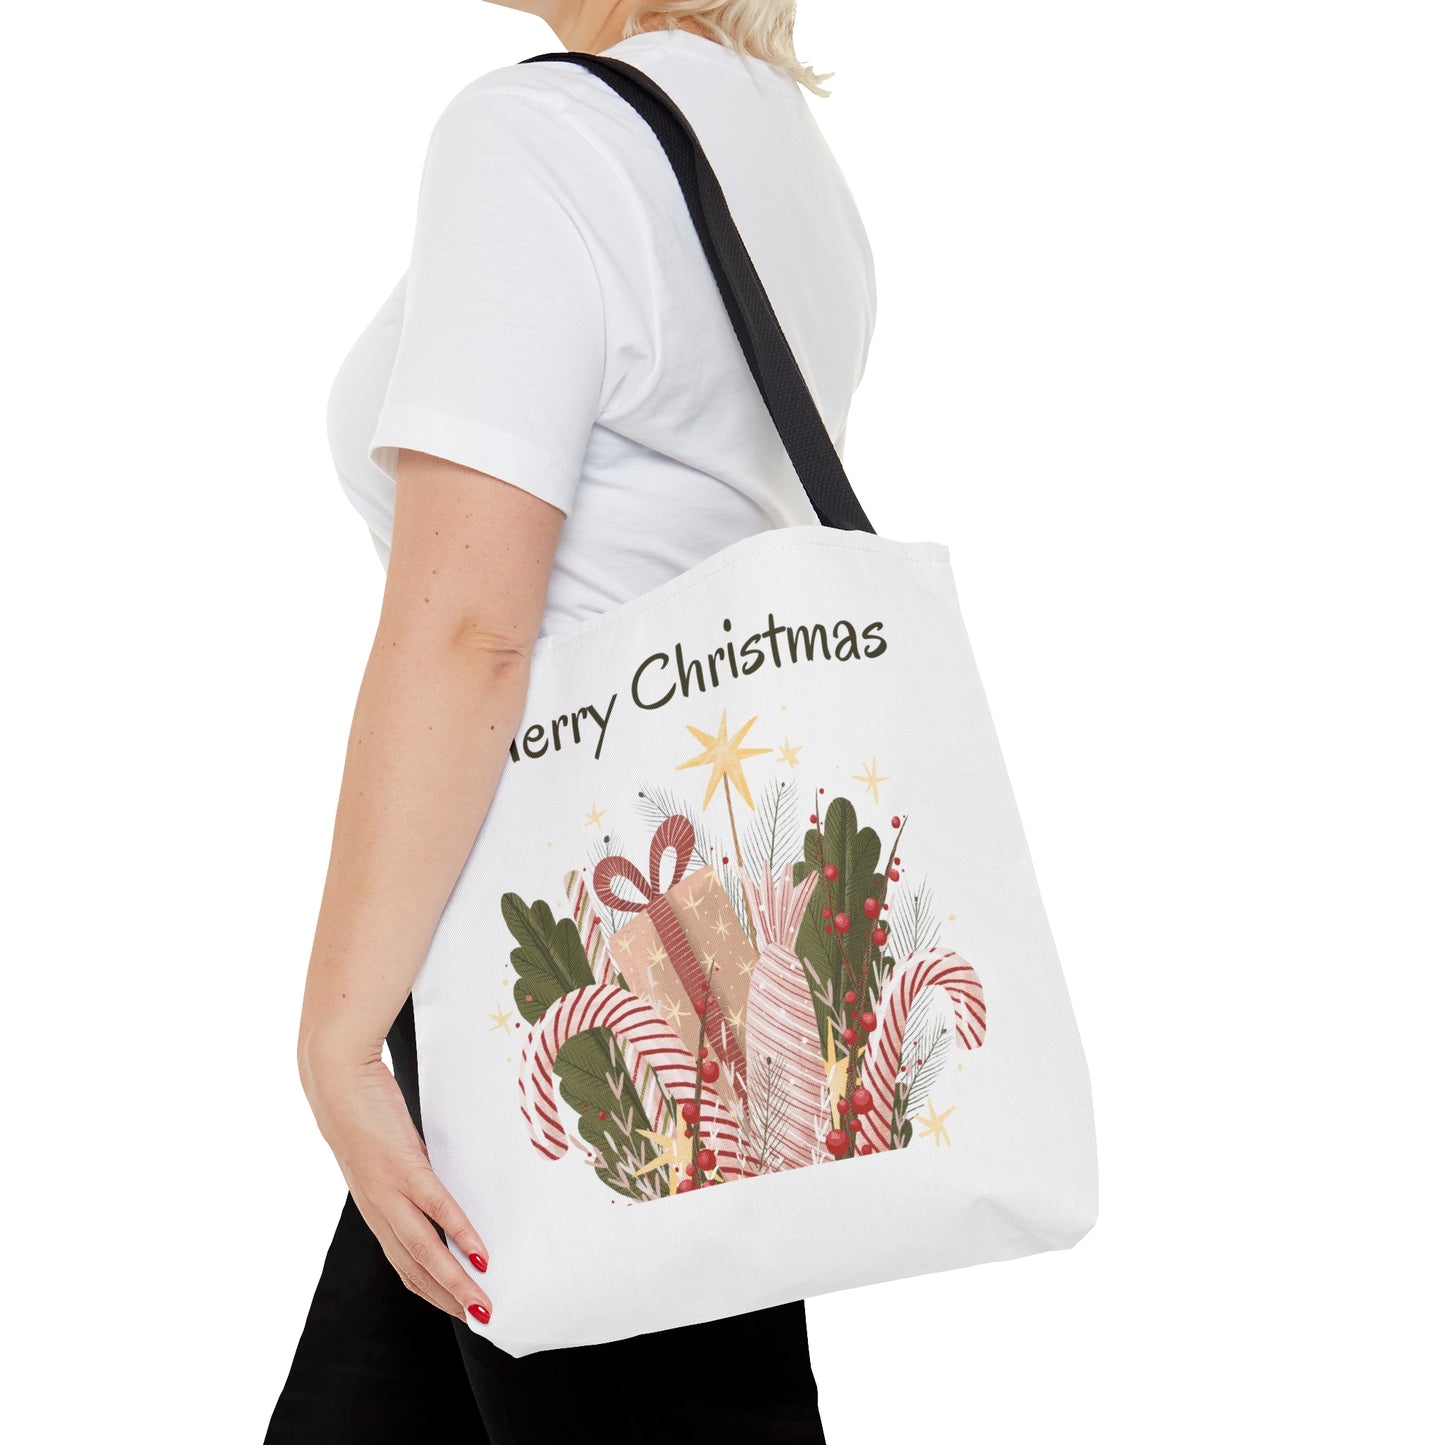 Merry Christmas Gift Printed Tote Bags, Reusable Tote Bag